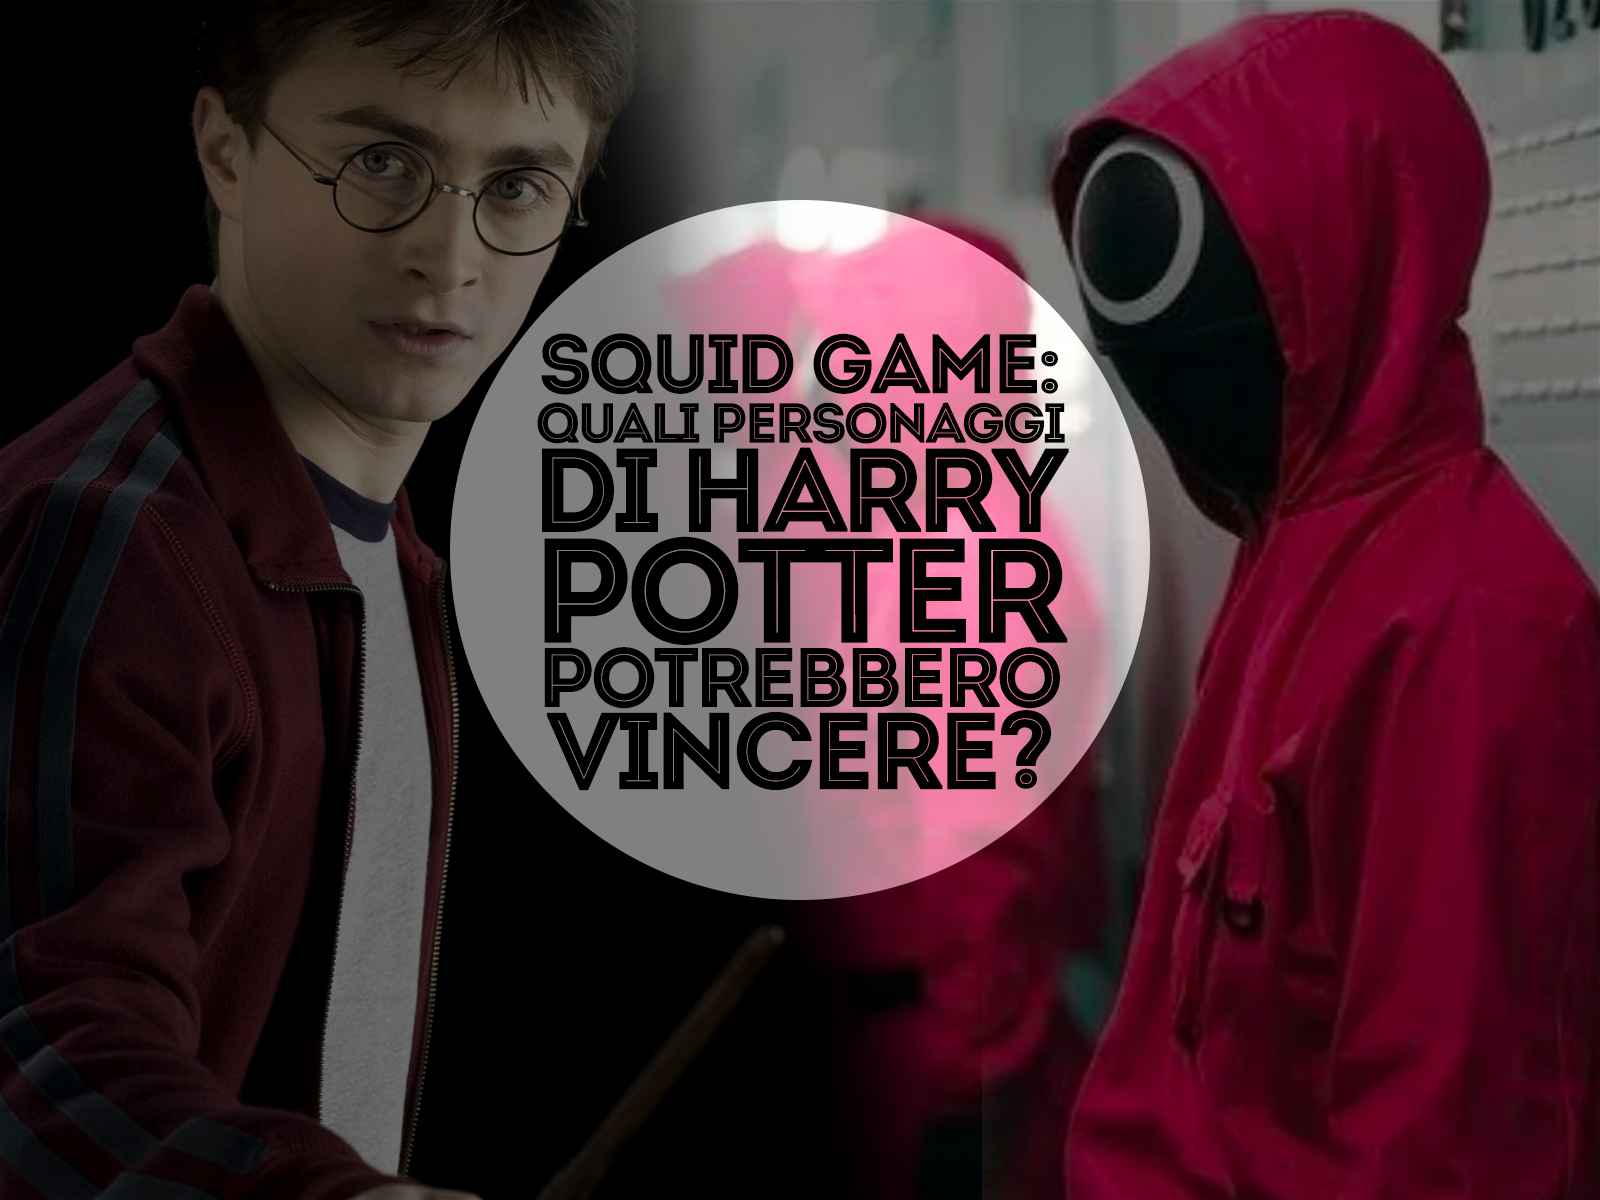 Squid Game: quali personaggi di Harry Potter potrebbero vincere?